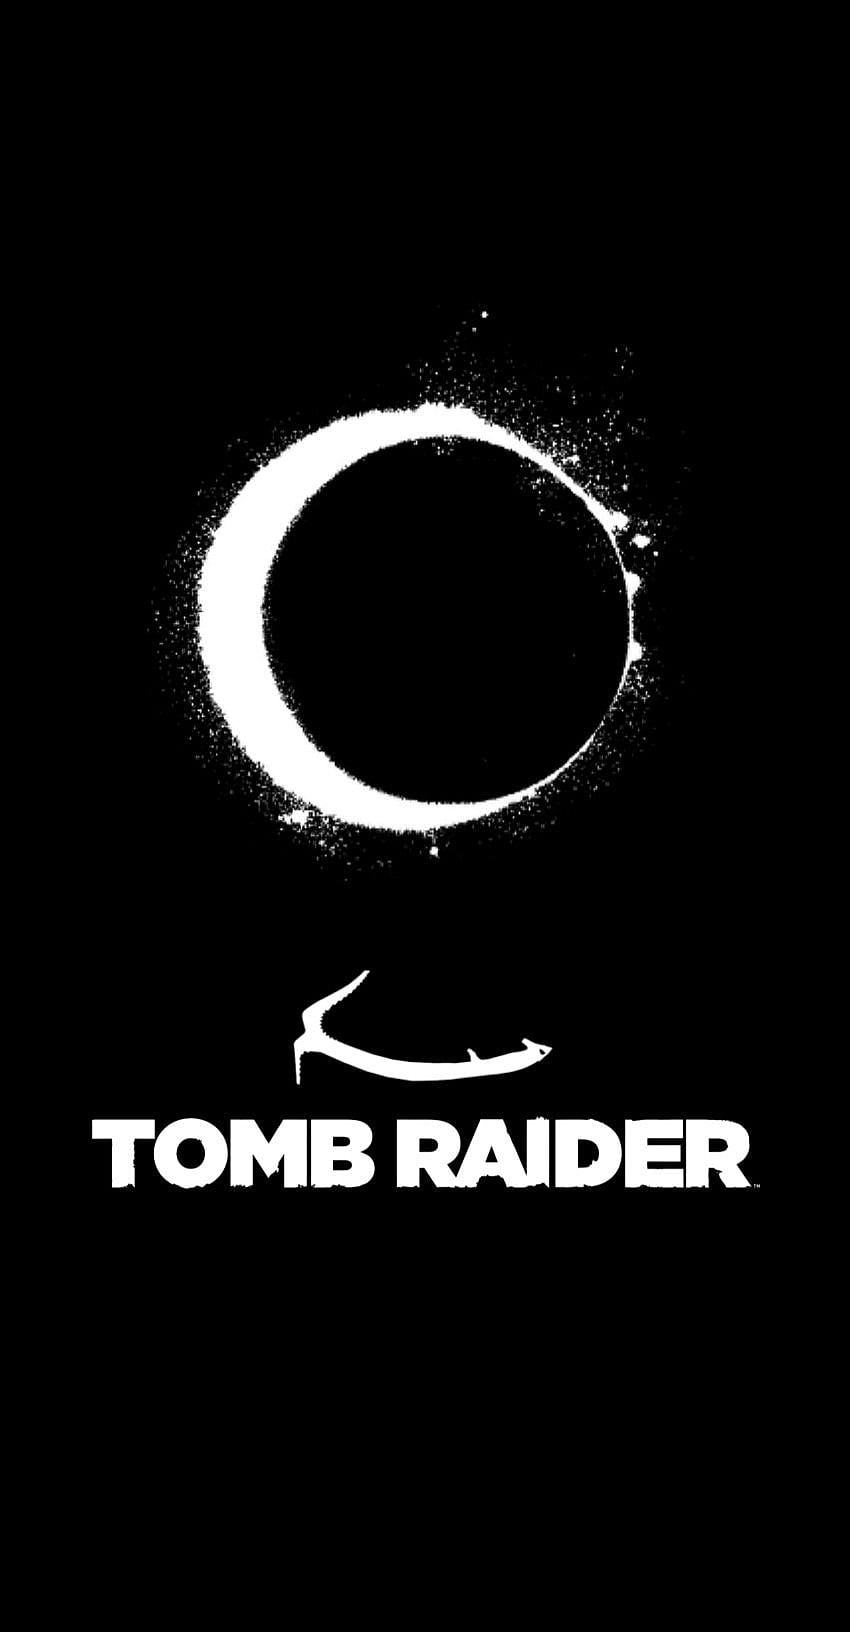 Tomb raider art ideas in 2021. tomb raider art, tomb raider, tomb, Tomb Raider Logo HD phone wallpaper